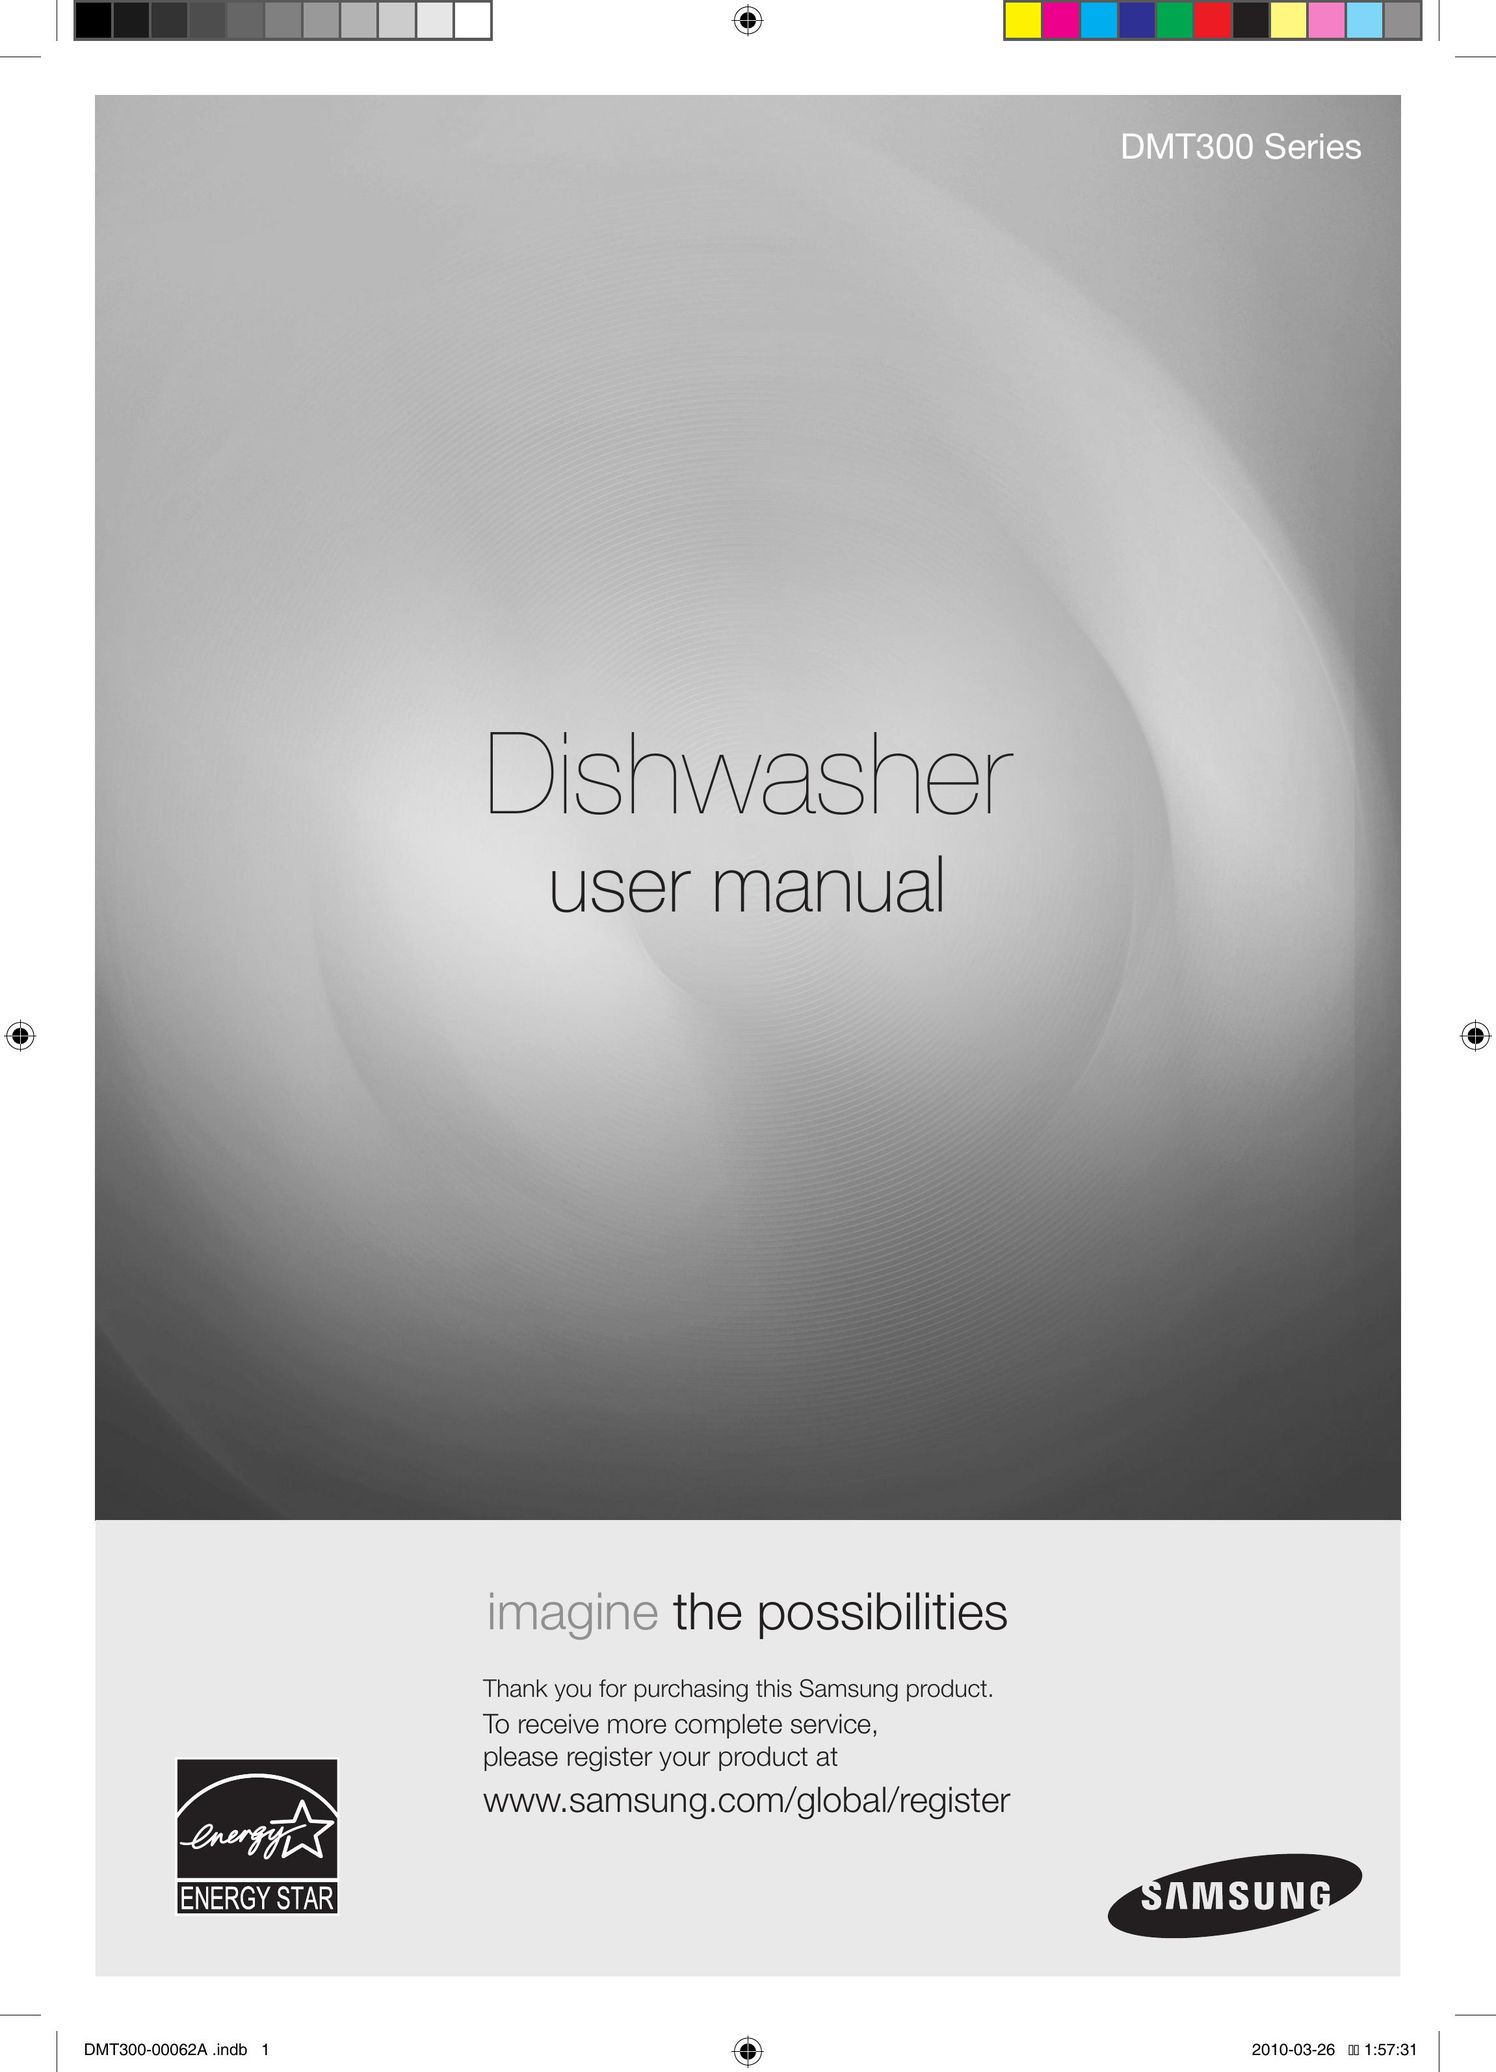 Samsung DMT300 Series Dishwasher User Manual